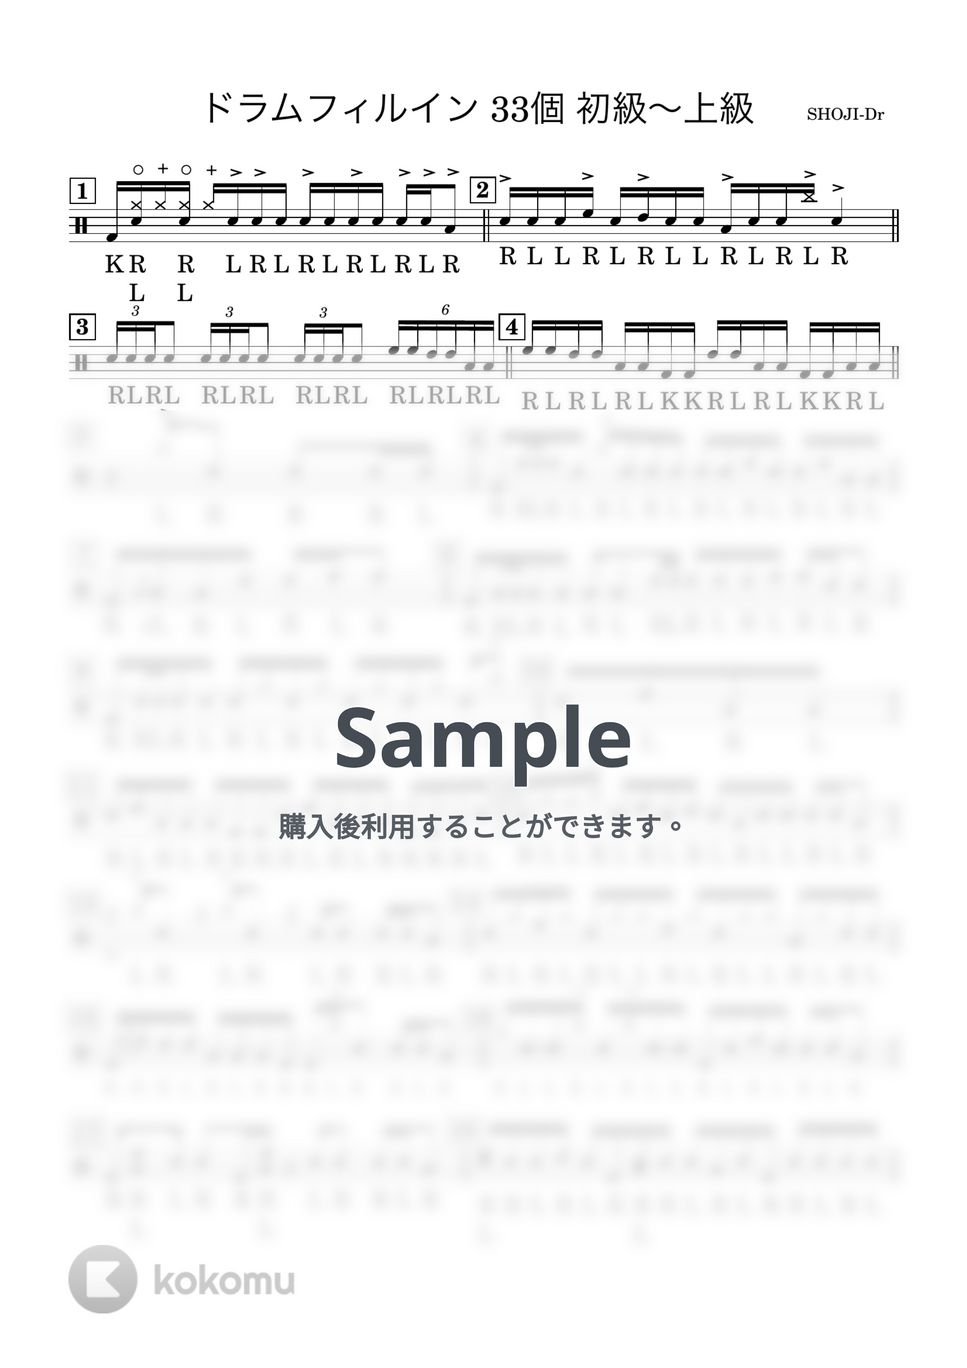 吉村昇治 - ドラムフィルイン33個 初級〜上級 (様々なドラムフィルイン) by 吉村昇治